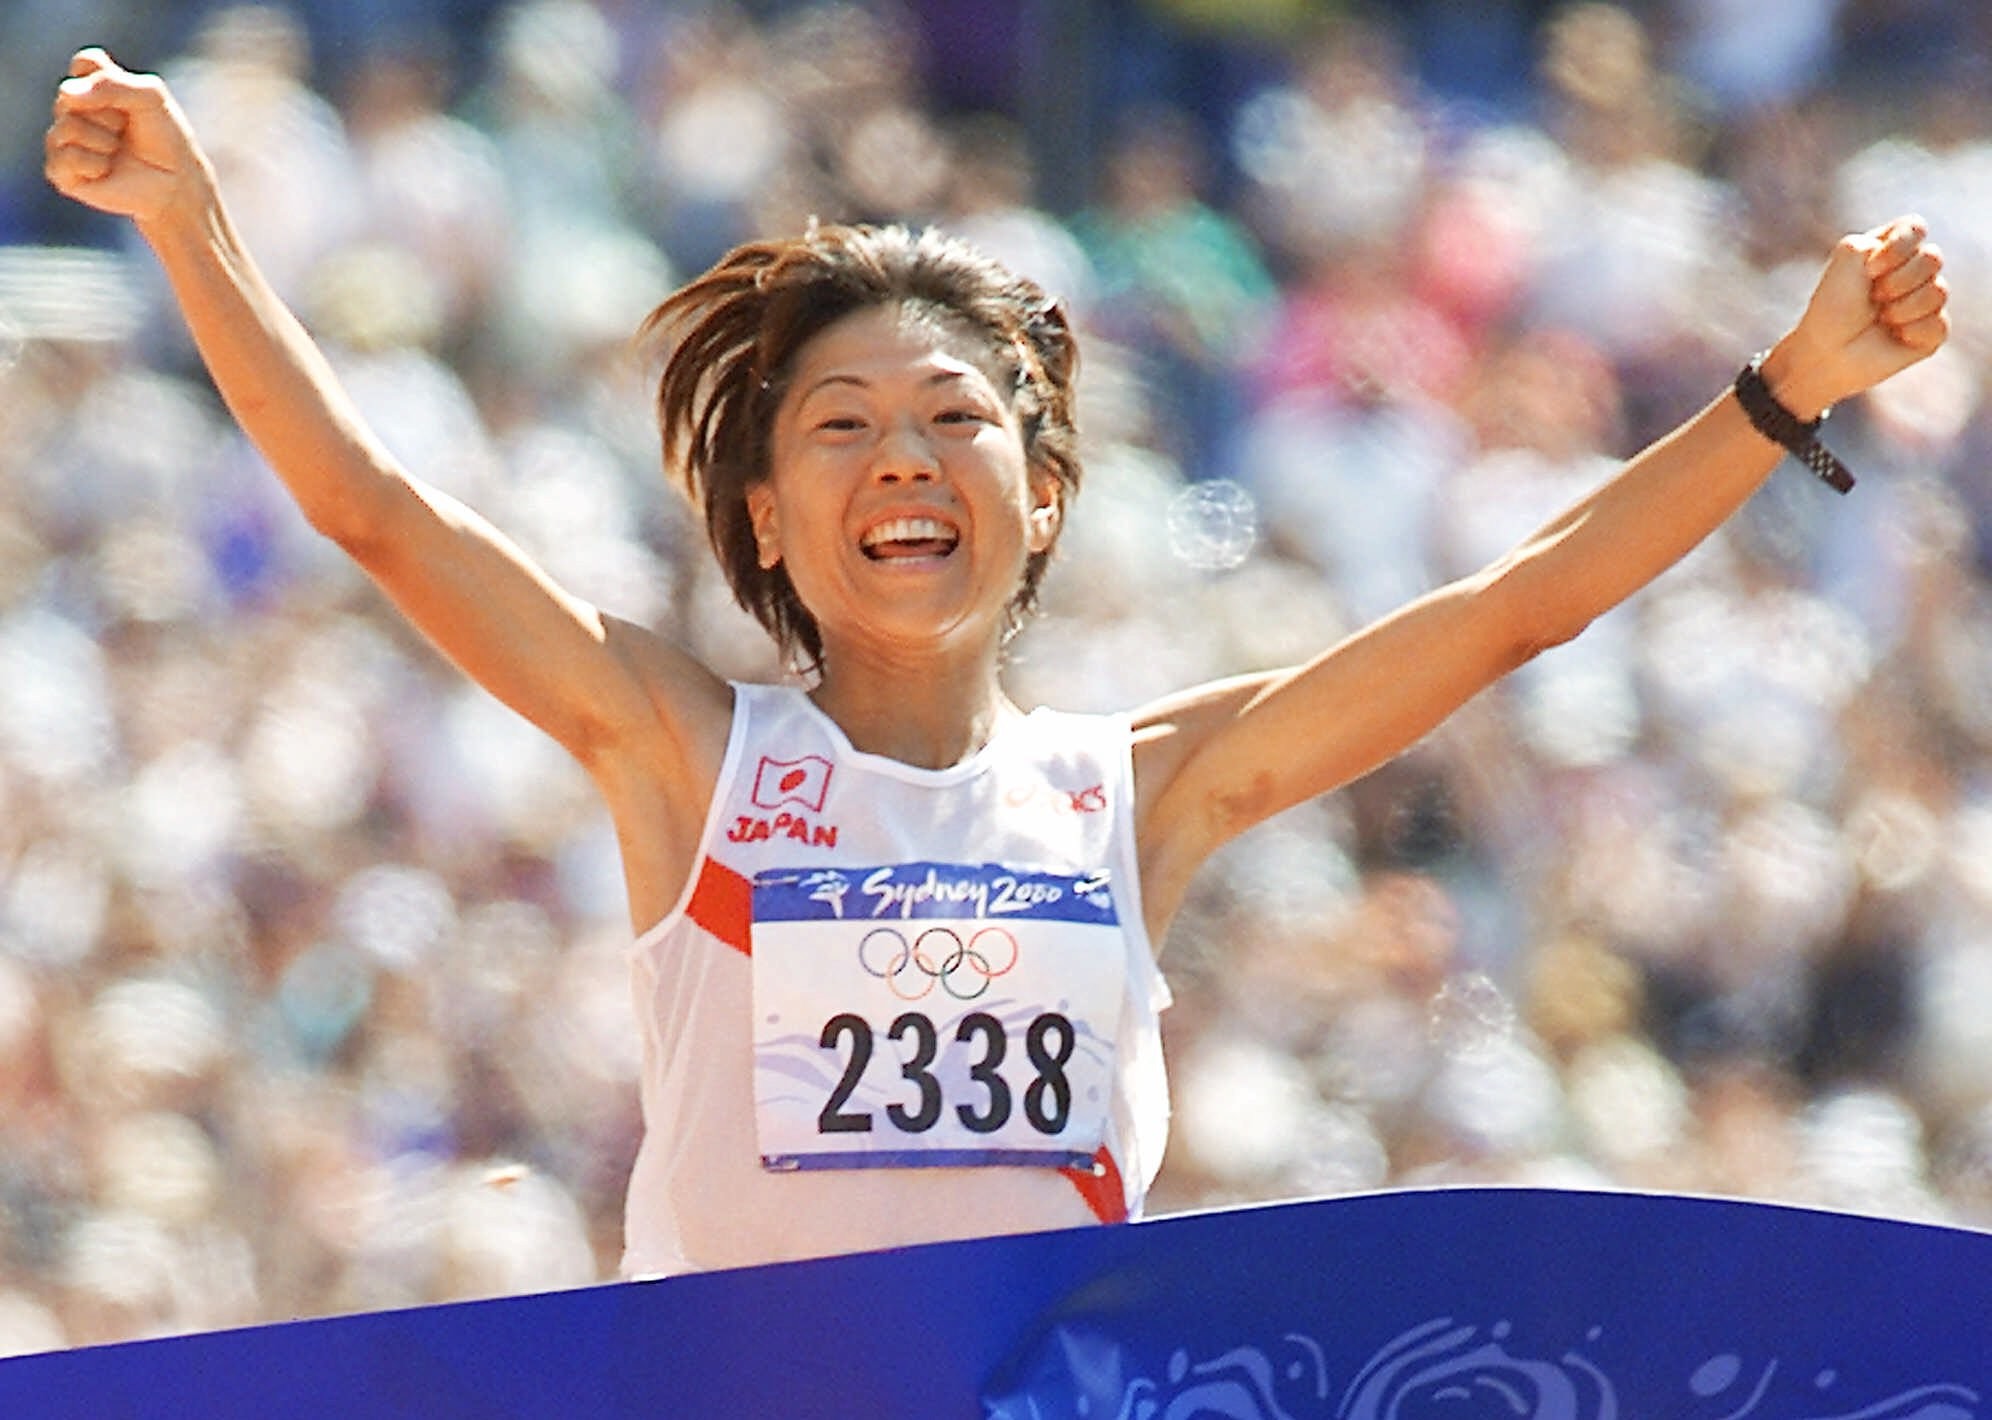 Marathon gold medallist Naoko Takahashi says Tokyo 2020 marathon will be tough